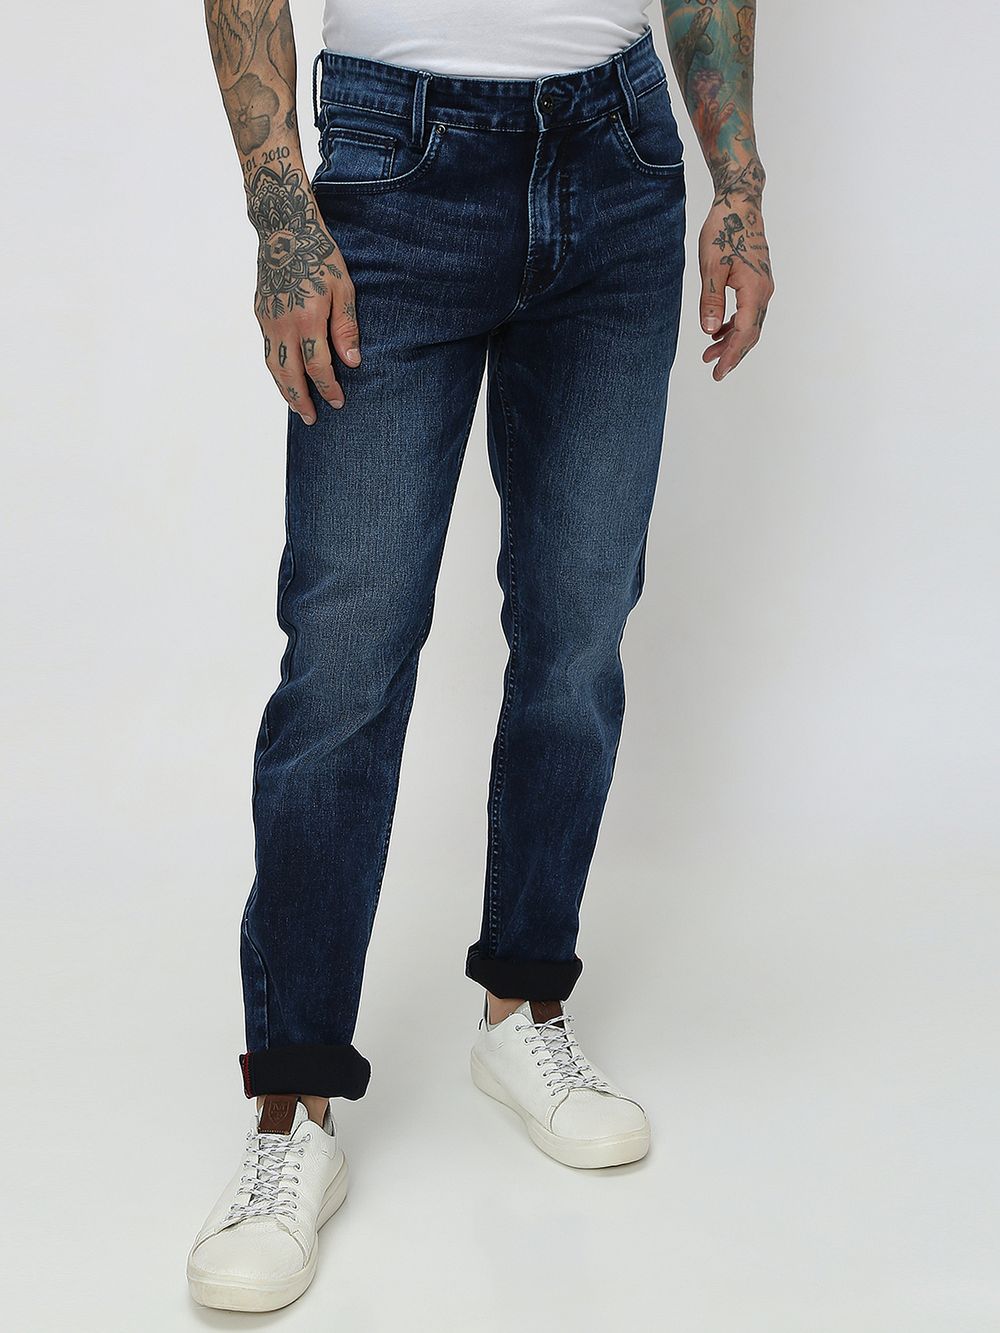 Indigo Blue Narrow Fit Originals Stretch Jeans